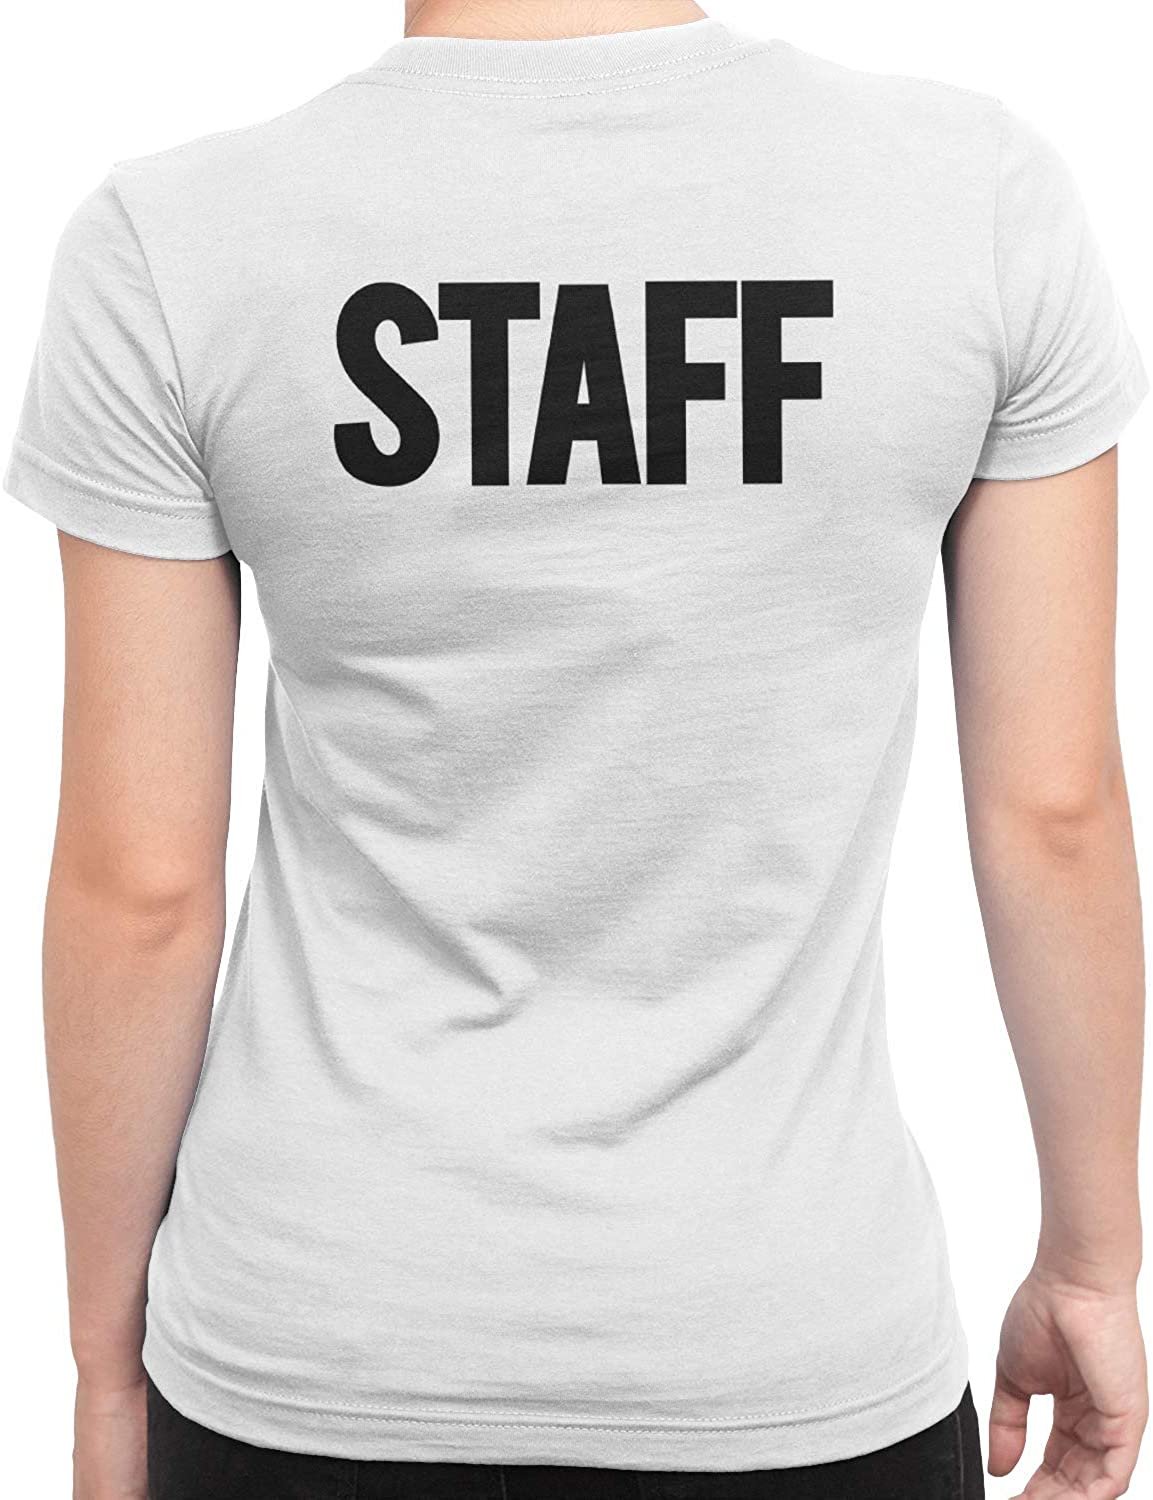 Staff Damen Kurzarm T-Shirt (einfarbiges Design, weiß)